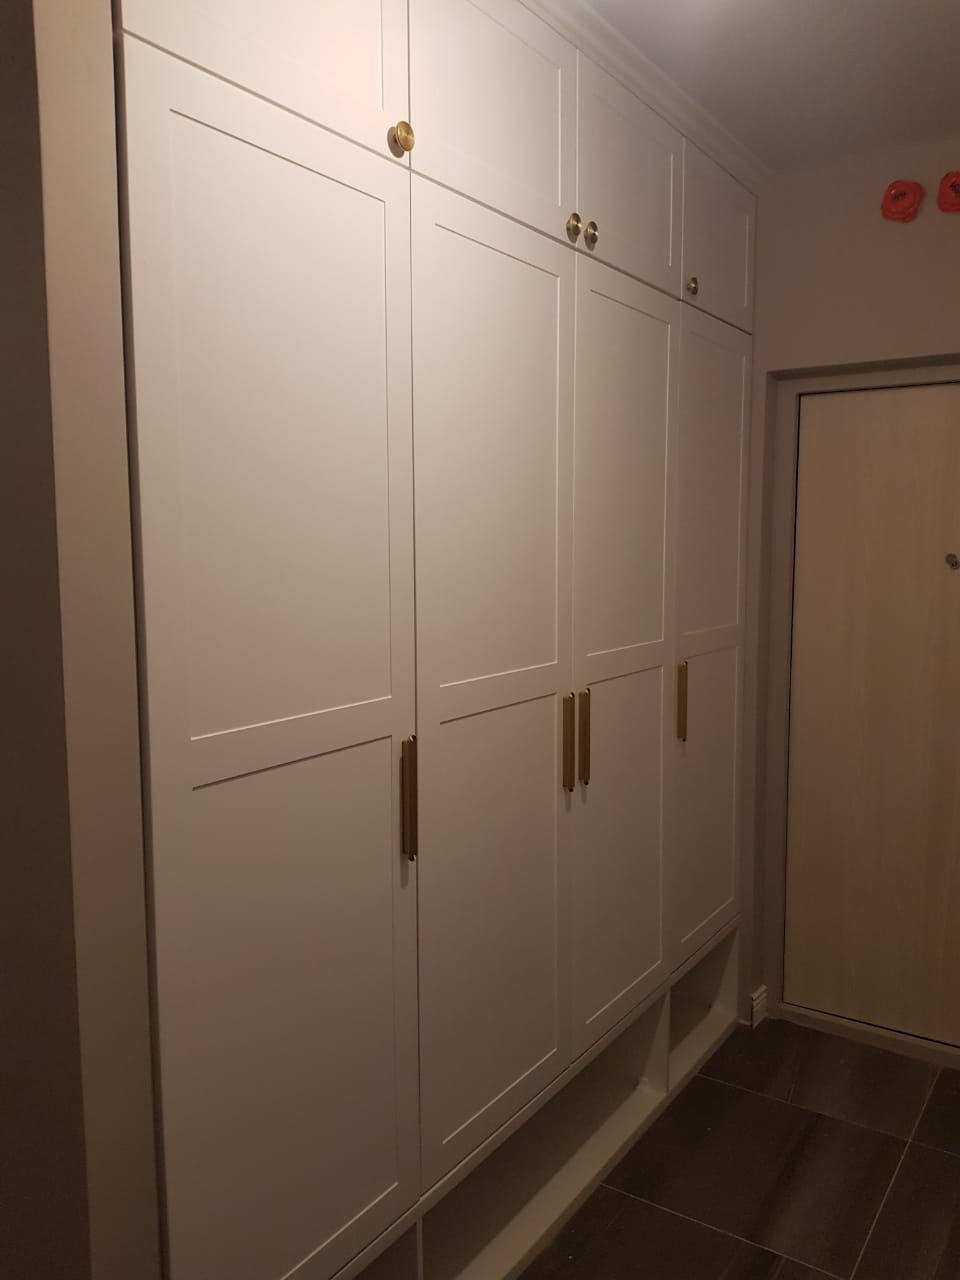 Белый распашной шкаф из МДФ с фрезерованными фасадами для прихожей, изготовленный на заказ в СПб